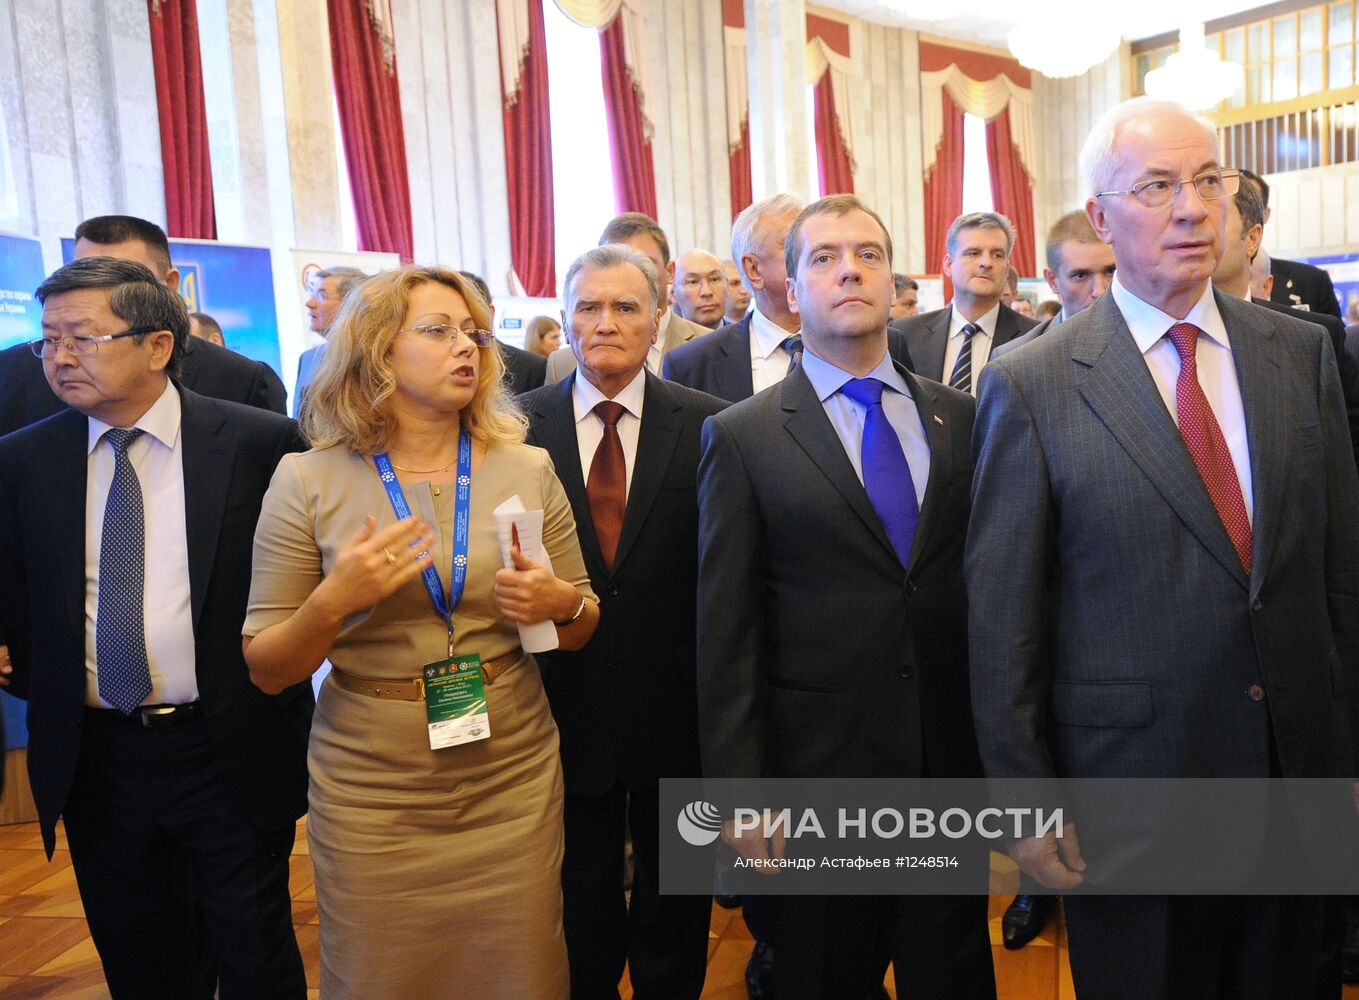 Д.Медведев на форуме "Ялтинские деловые встречи"